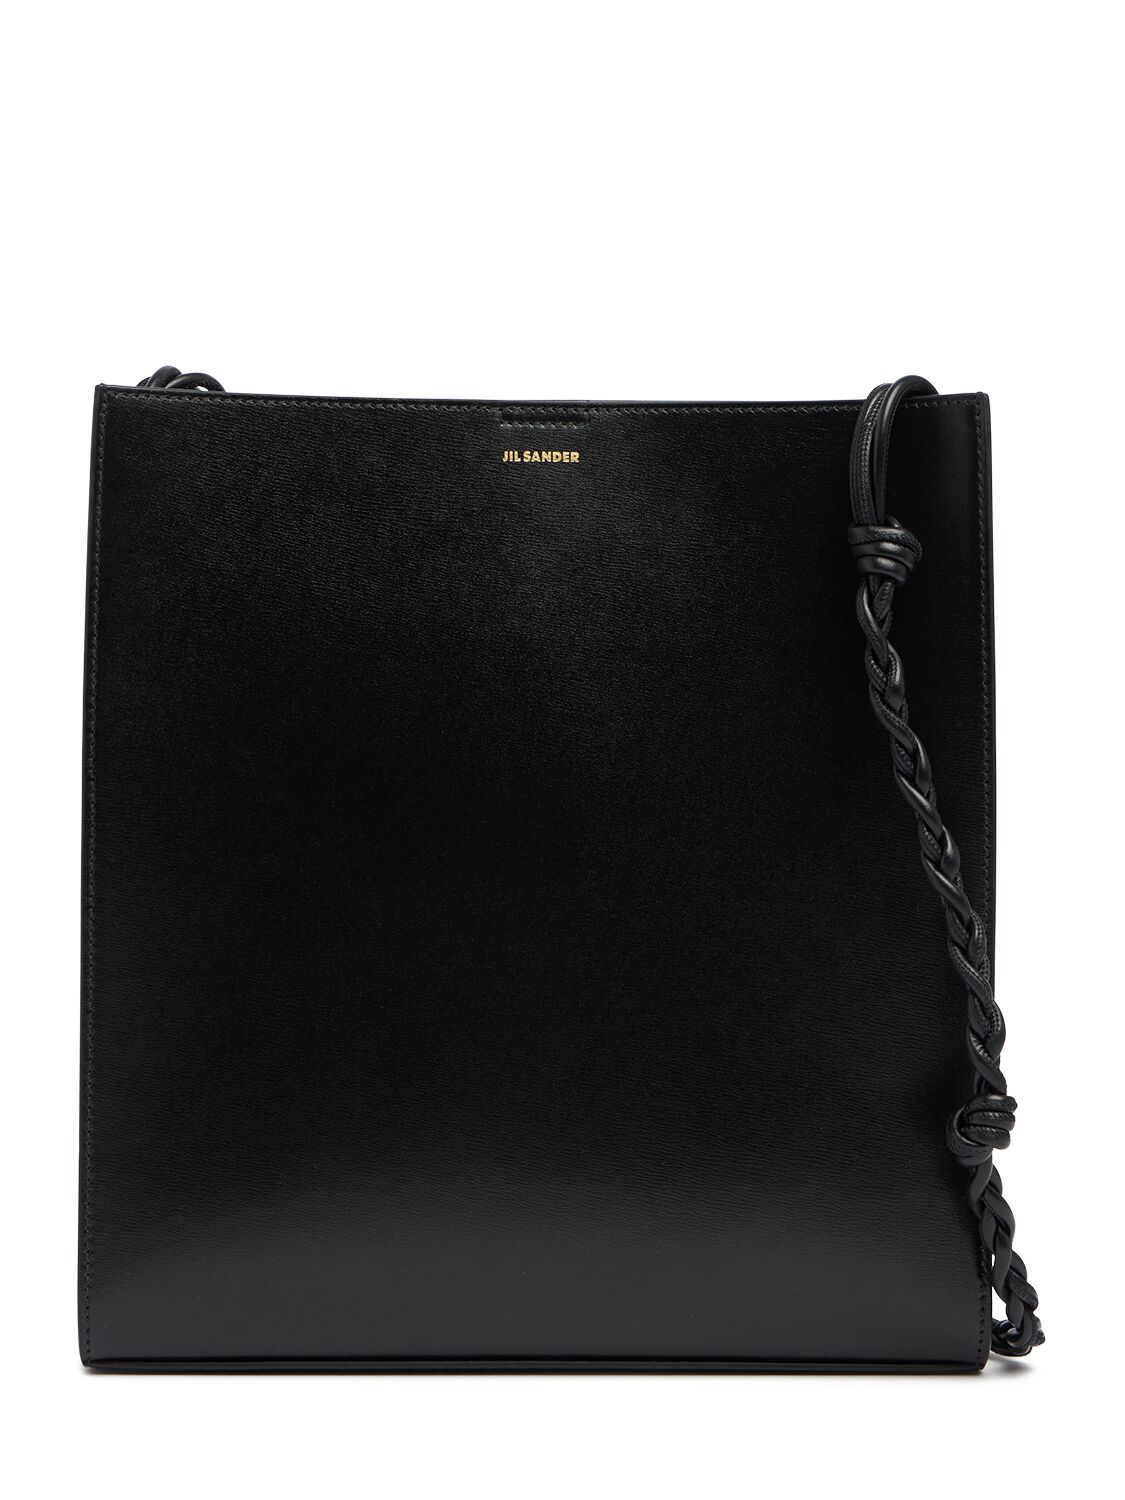 Image of Medium Tangle Leather Shoulder Bag